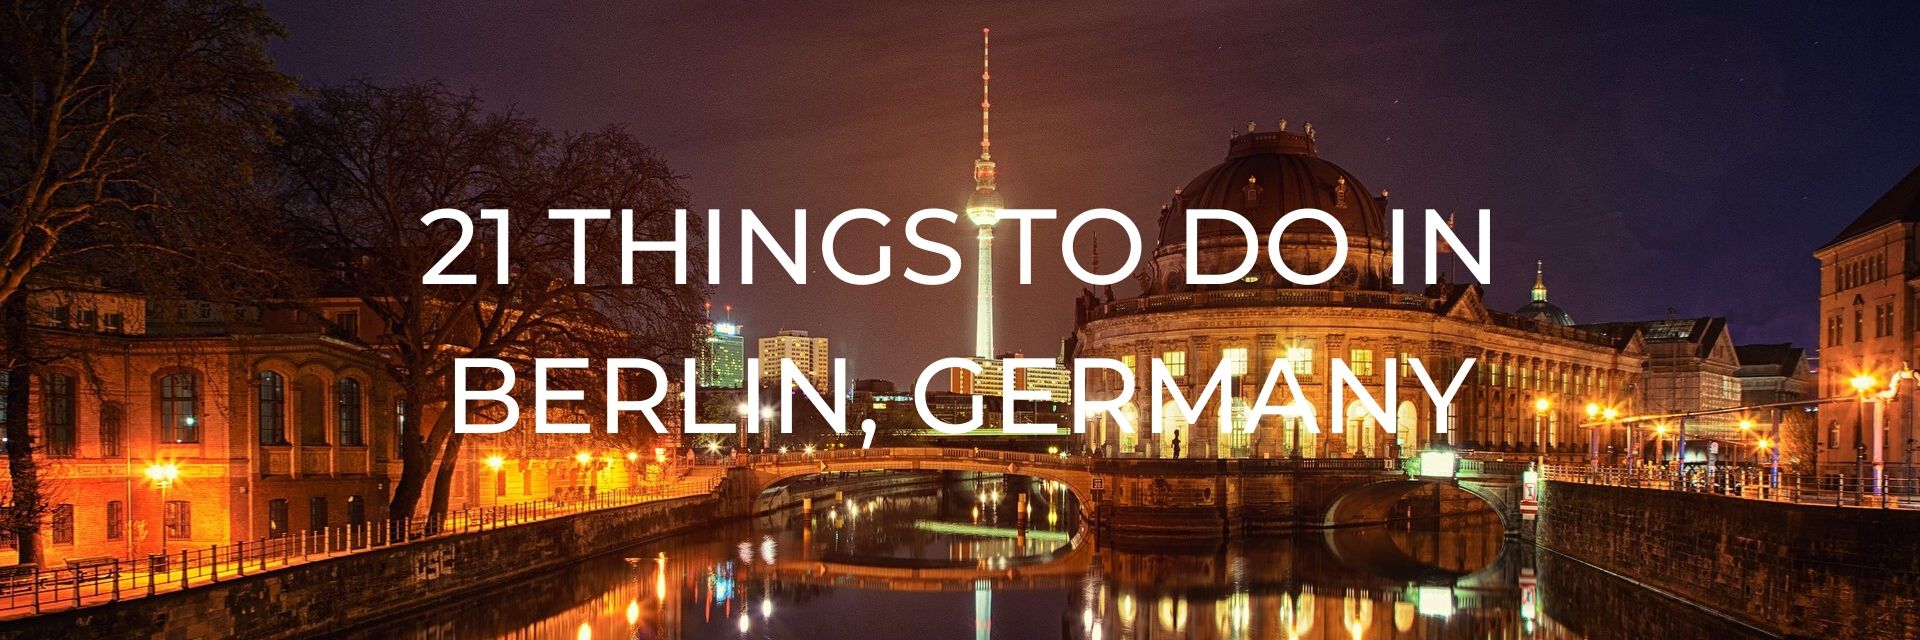 21 Things to Do in Berlin, Germany Desktop Header